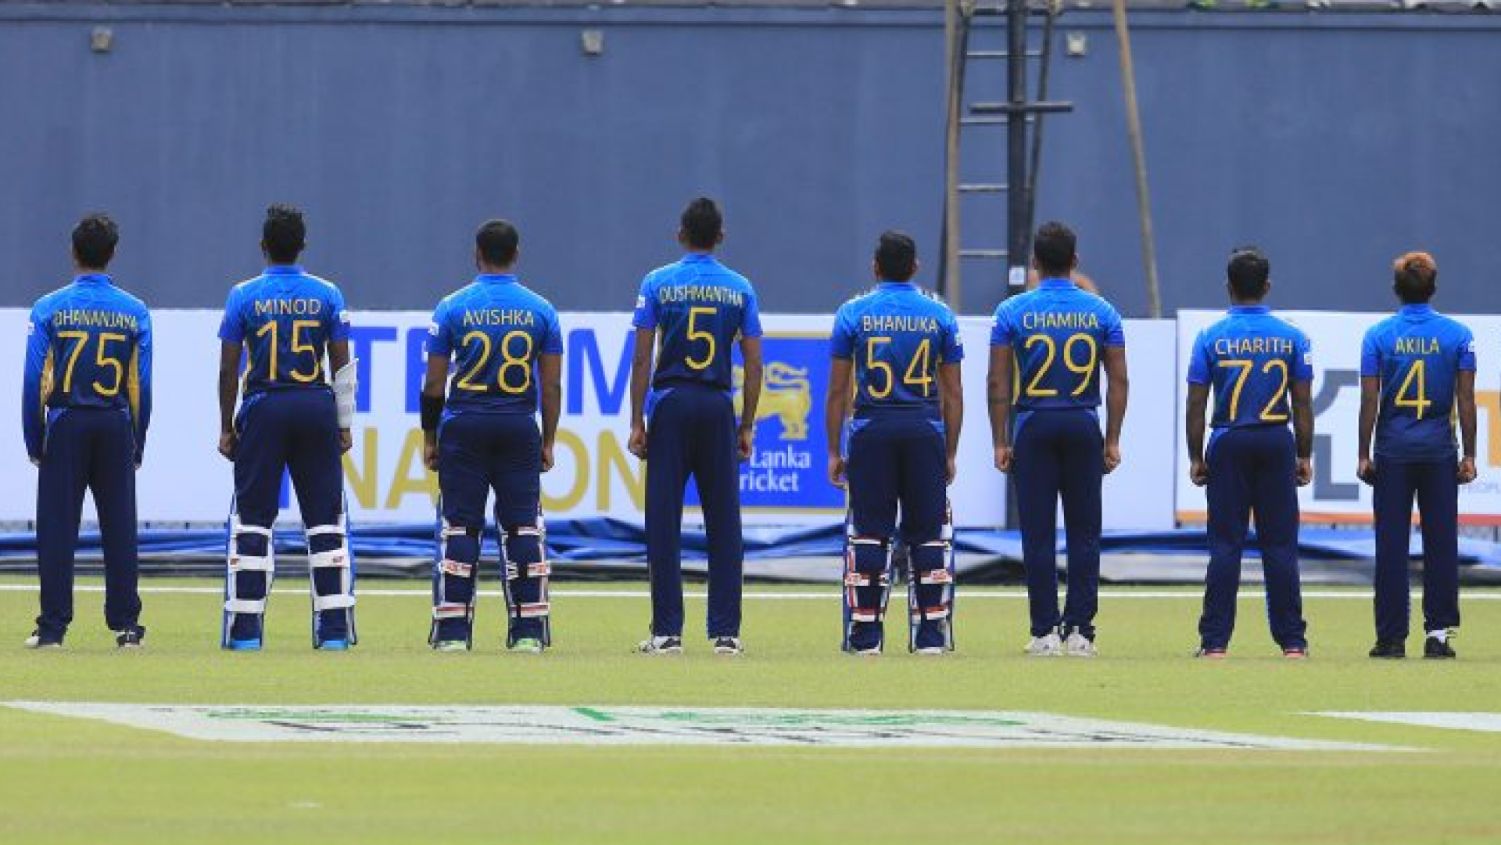 T20 World Cup 2021 Sri Lanka Squad: Full Team List, Player